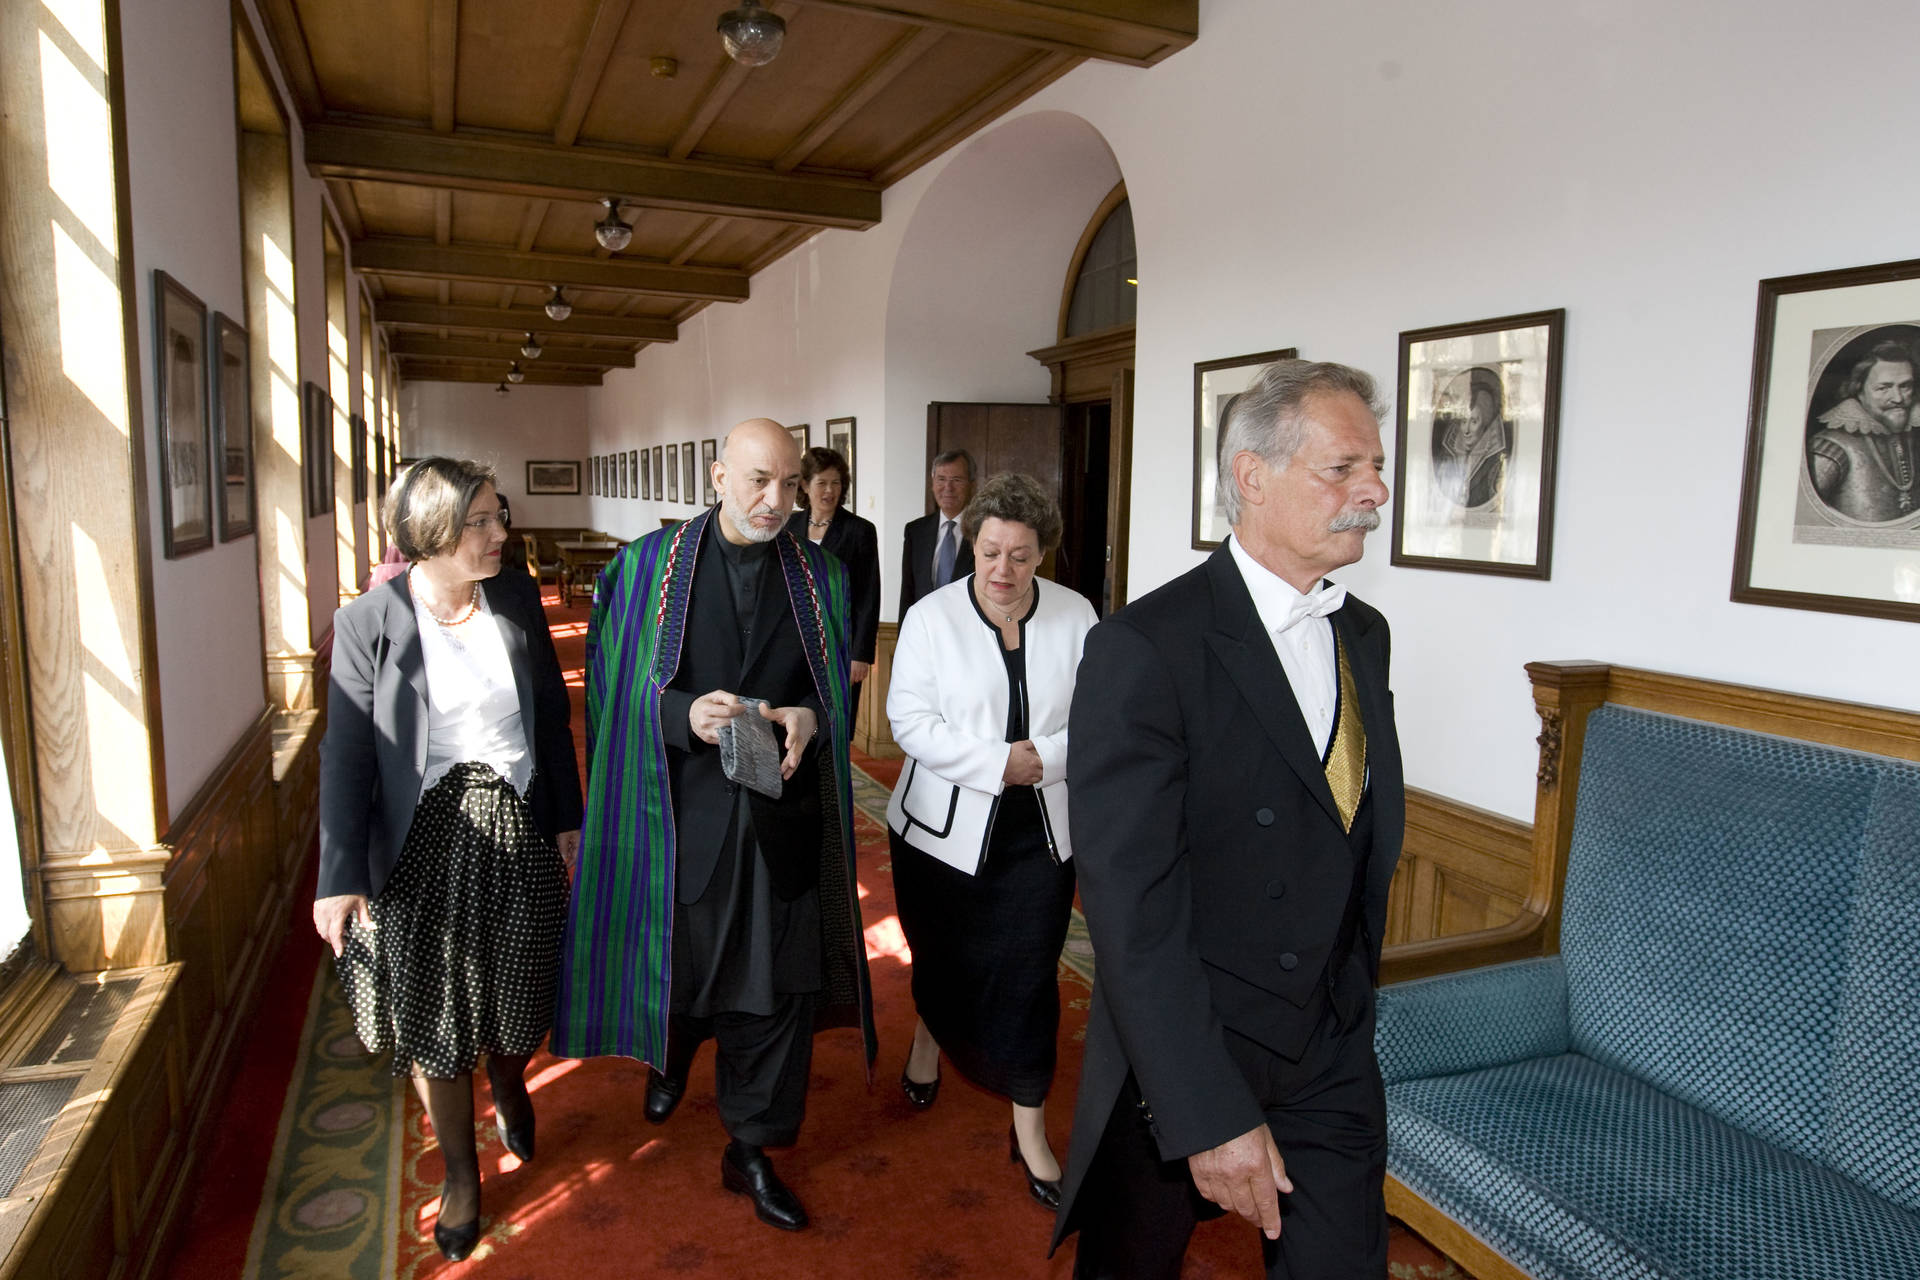 Kamerbewaarder Piet van Gils bij de ontvangst van de President van Afghanistan. Van Gils werkte ruim 20 jaar bij de Eerste Kamer.